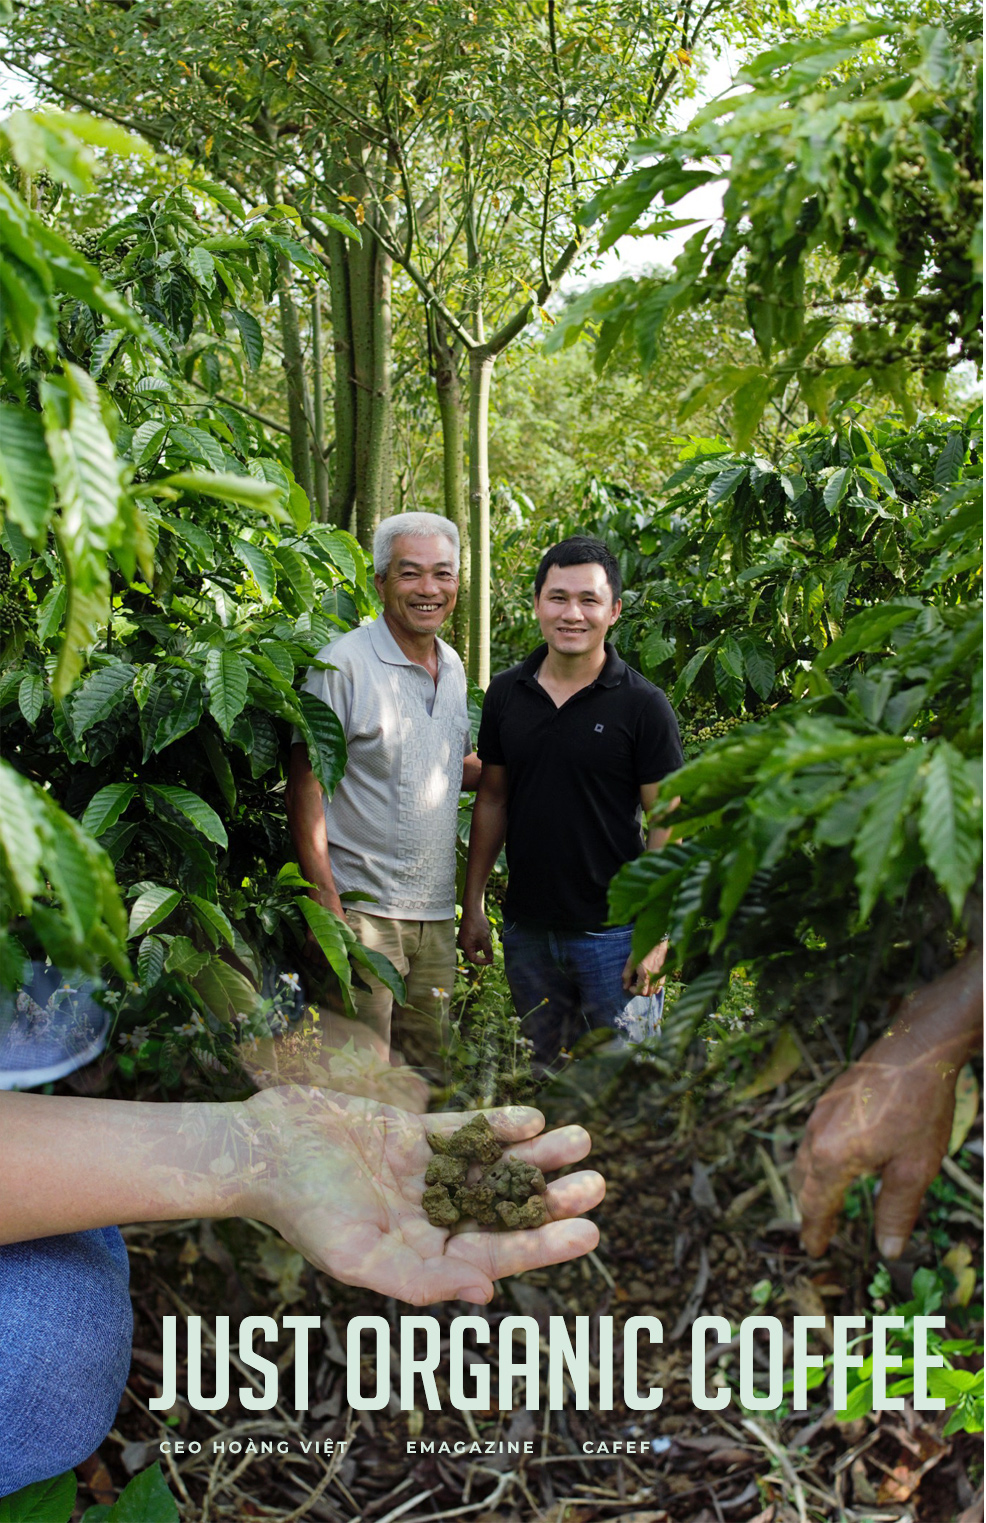 CEO Hoàng Việt: Laha Café sẽ là doanh nghiệp tiên phong bán từng ly cà phê organic hàng ngày cho người tiêu dùng Việt - Ảnh 3.